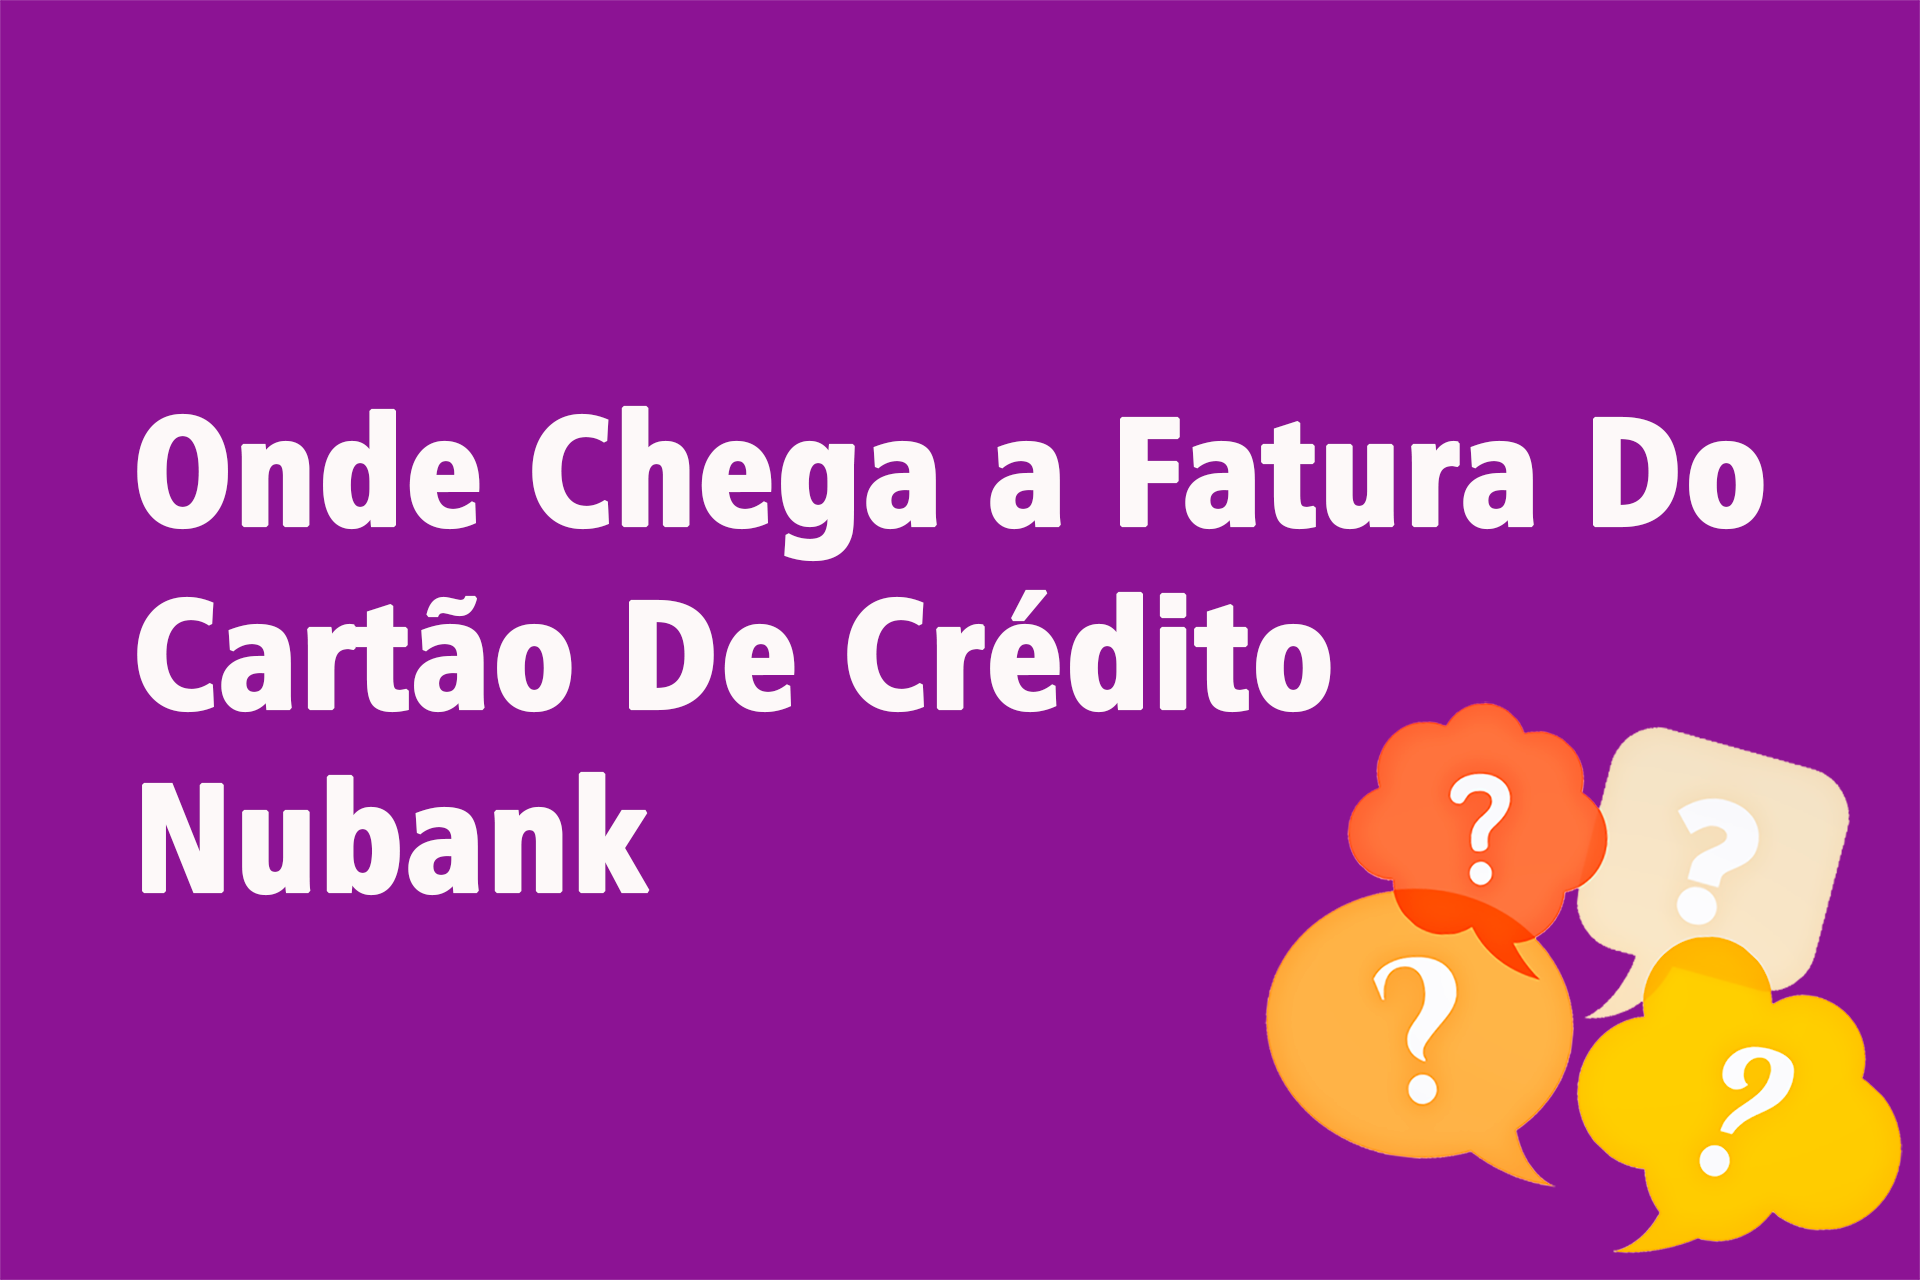 Onde Chega a Fatura Do Cartão De Crédito Nubank?